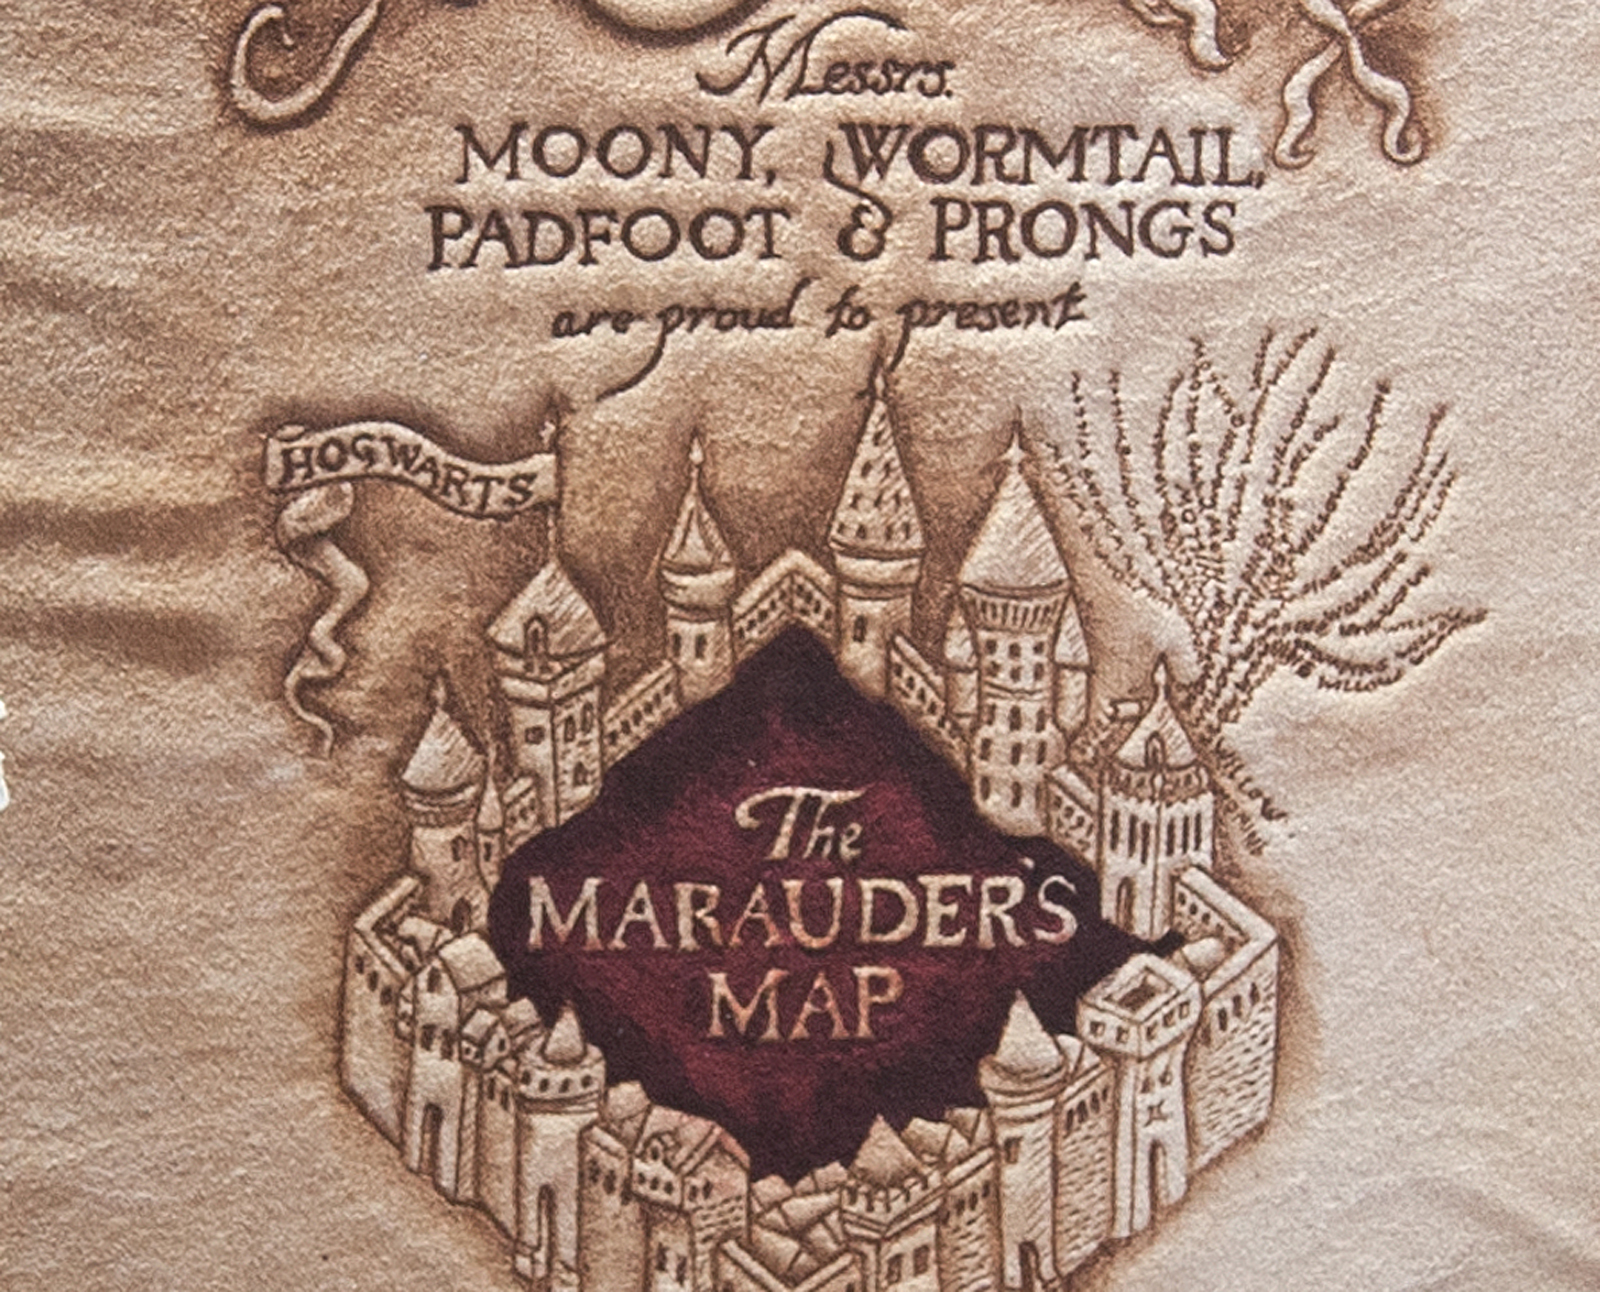 https://cavegeekart.com/wp-content/uploads/2023/03/Harry-Potter-Marauders-Map-Close-Up.jpg